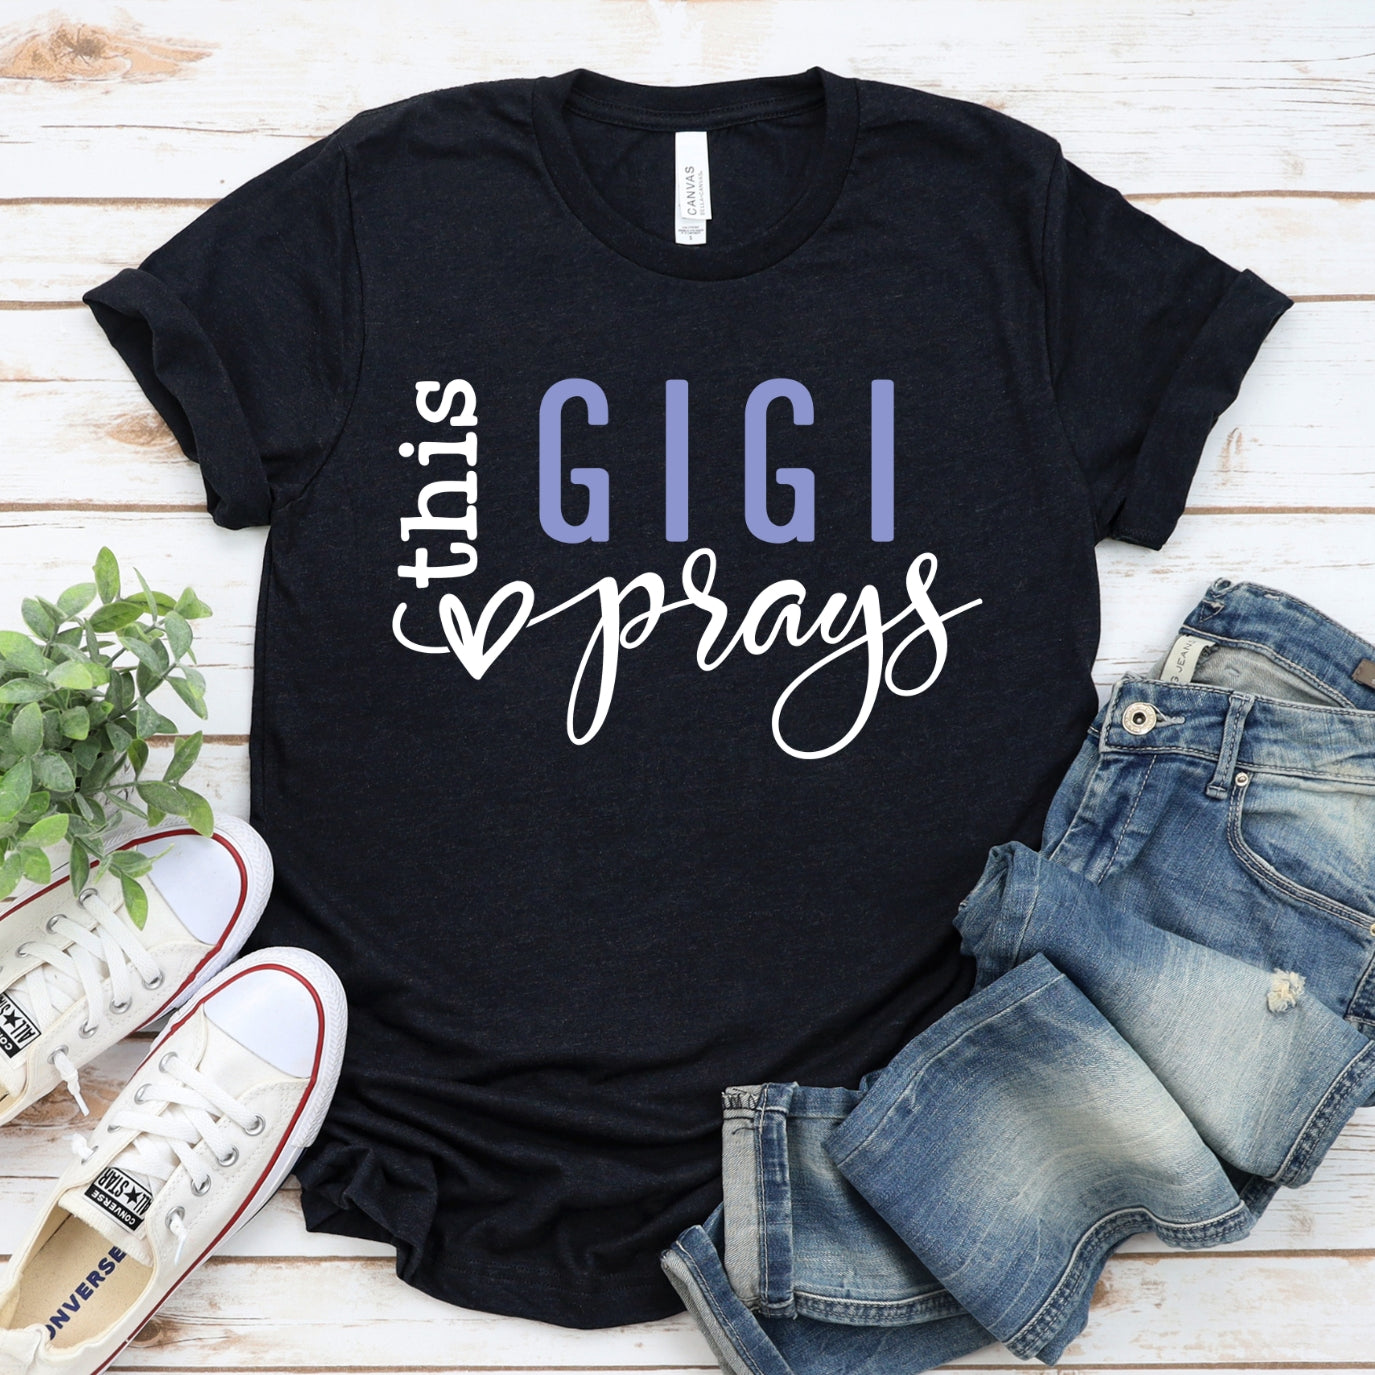 This GiGi Prays Women's T-Shirt